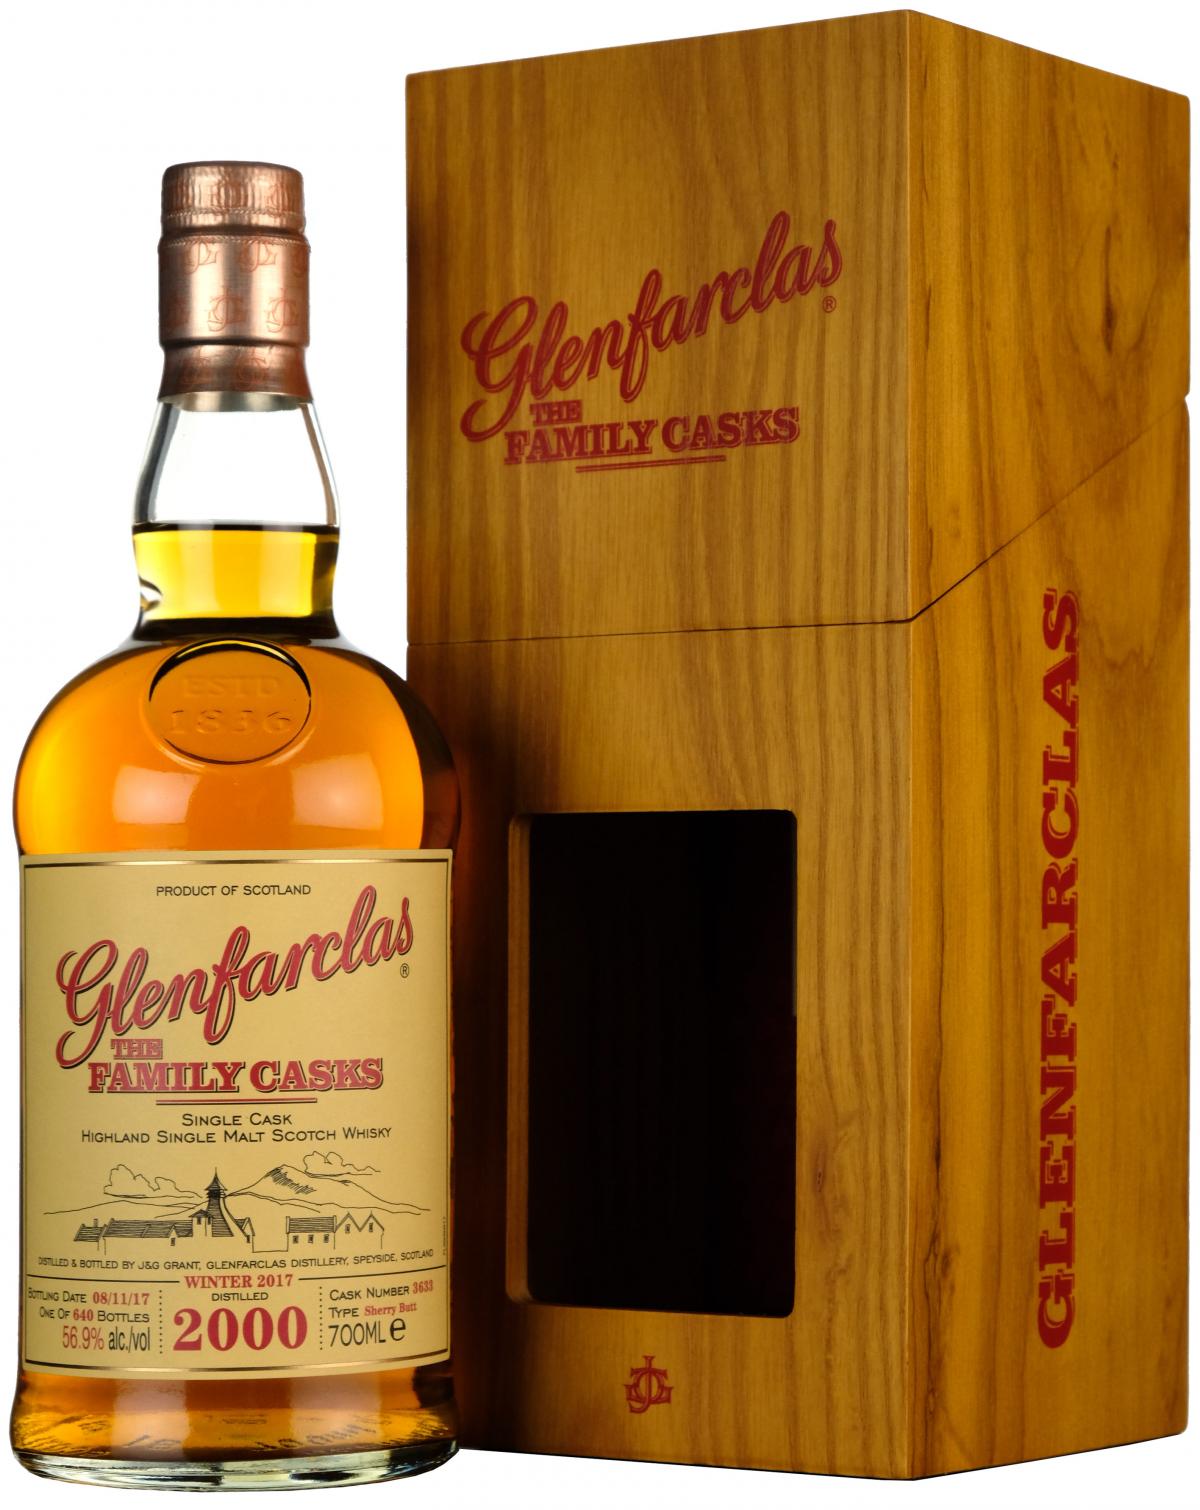 glenfarclas 2000, the family cask 3633, speyside single malt scotch whisky